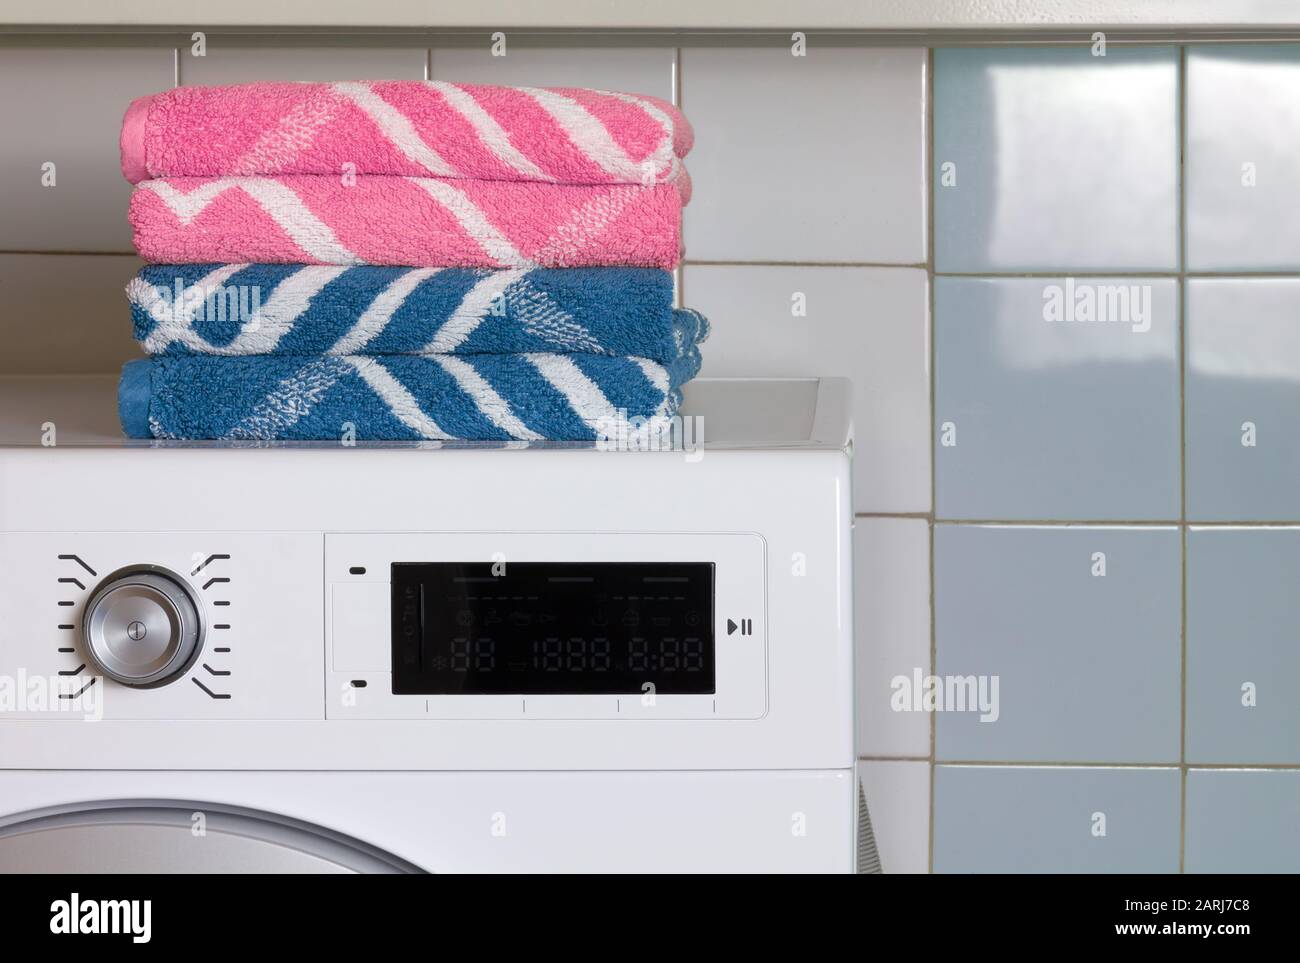 Zwei blaue Handtücher und zwei rosafarbene Handtücher auf der Oberseite  einer Waschmaschine in einer Waschküche Stockfotografie - Alamy